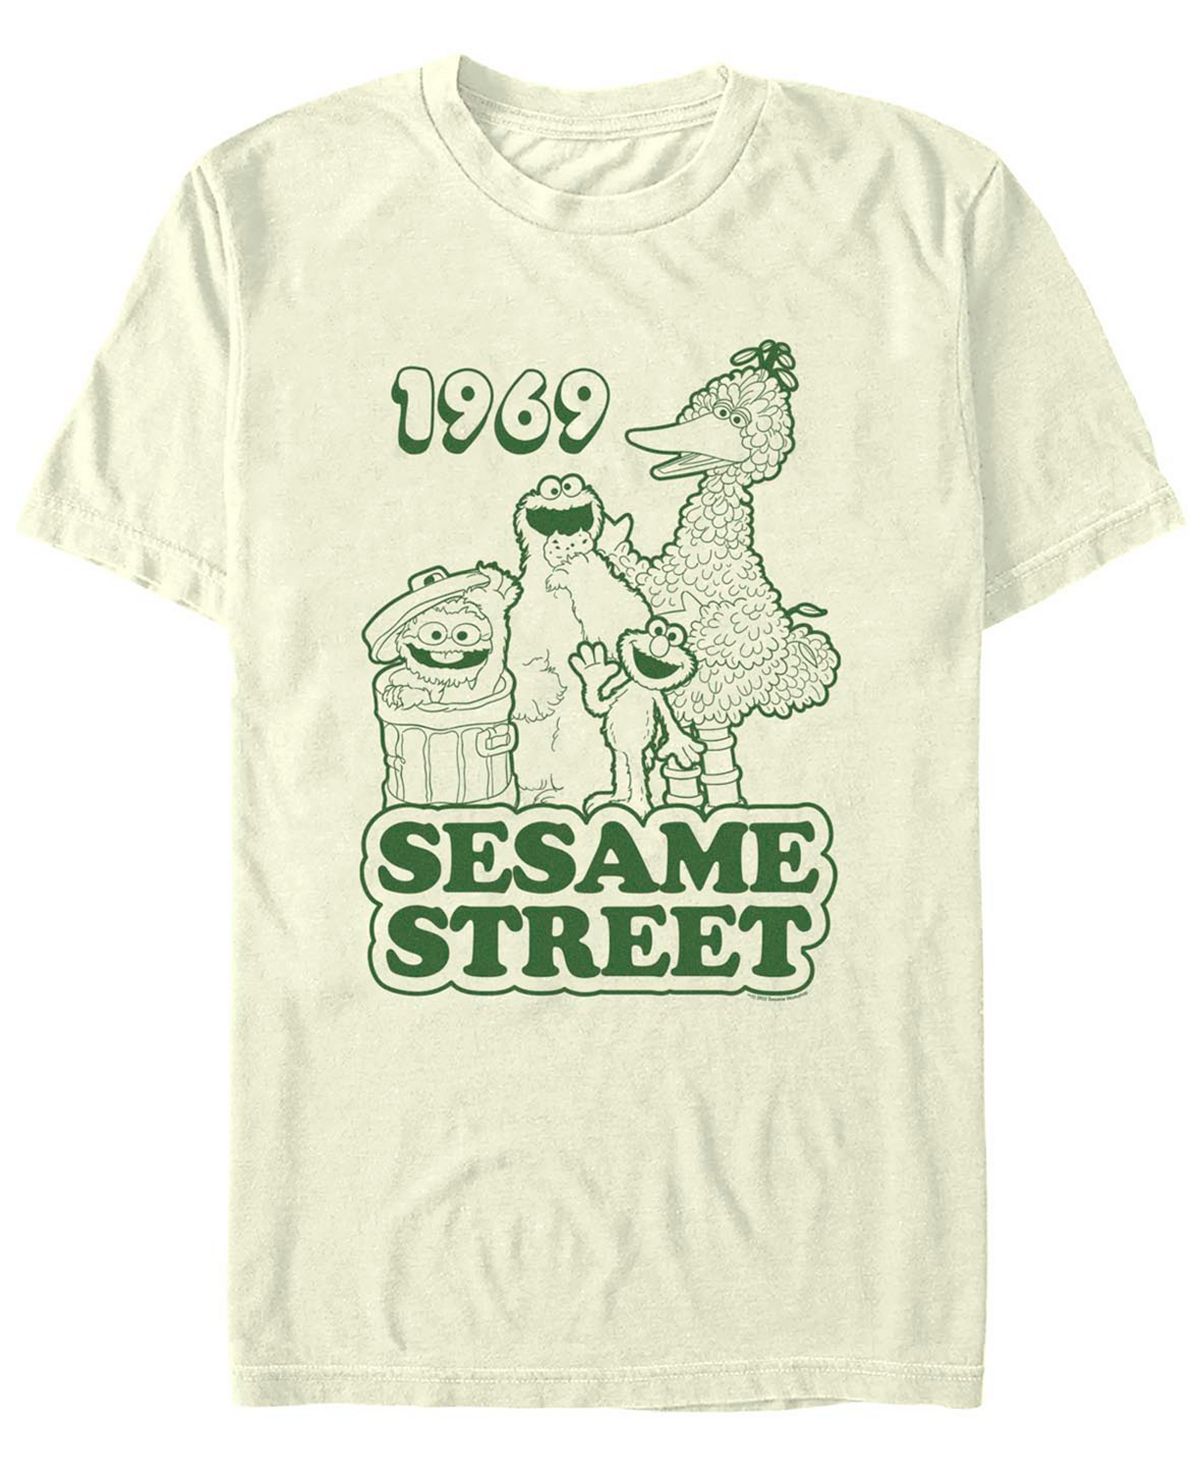 Мужская футболка с коротким рукавом sesame street sesame 1969 group Fifth Sun мужская футболка с коротким рукавом dalmatian group fifth sun